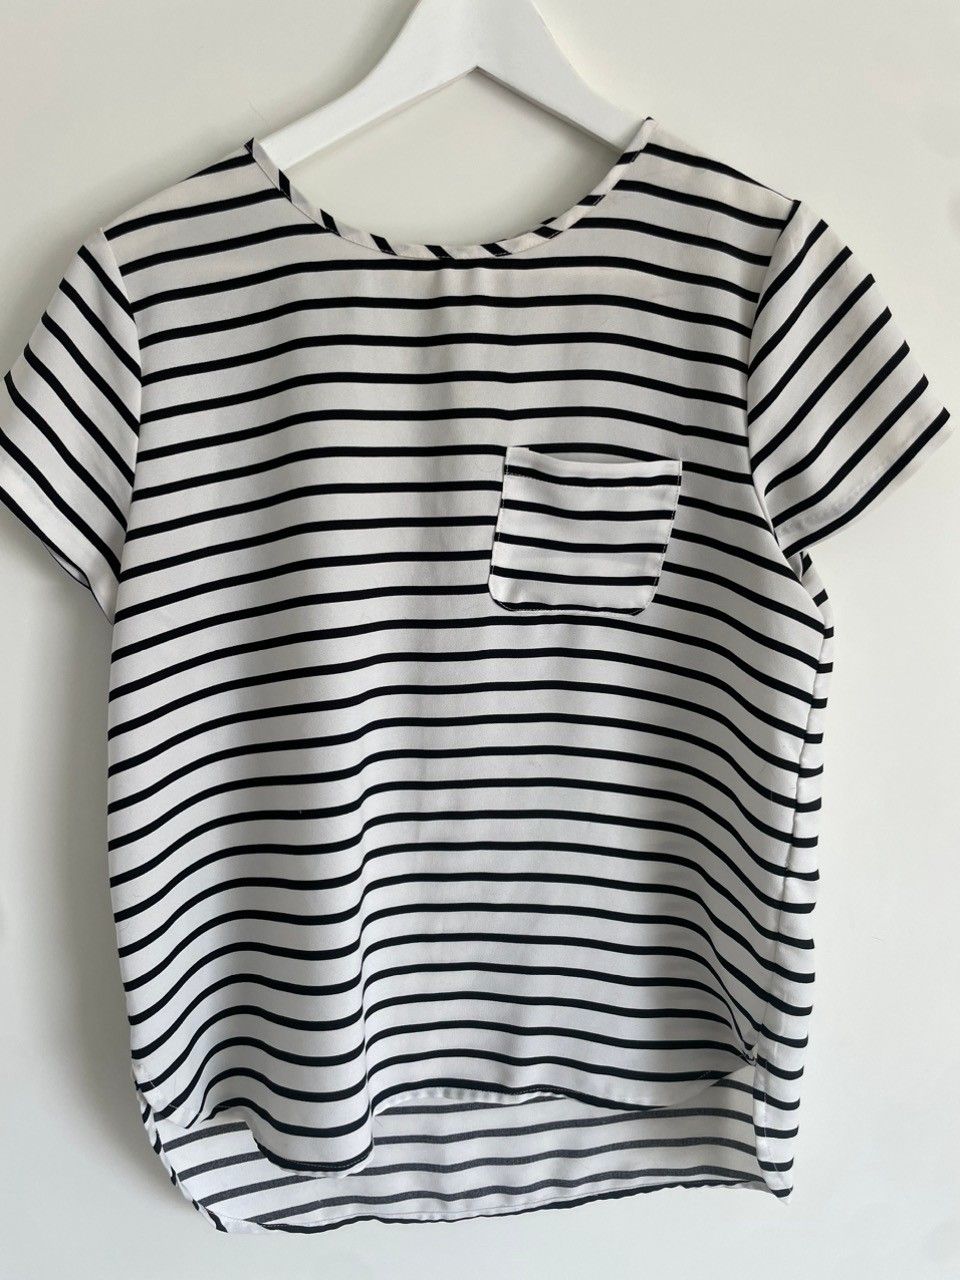 Naisten t-paita (polyester), 38